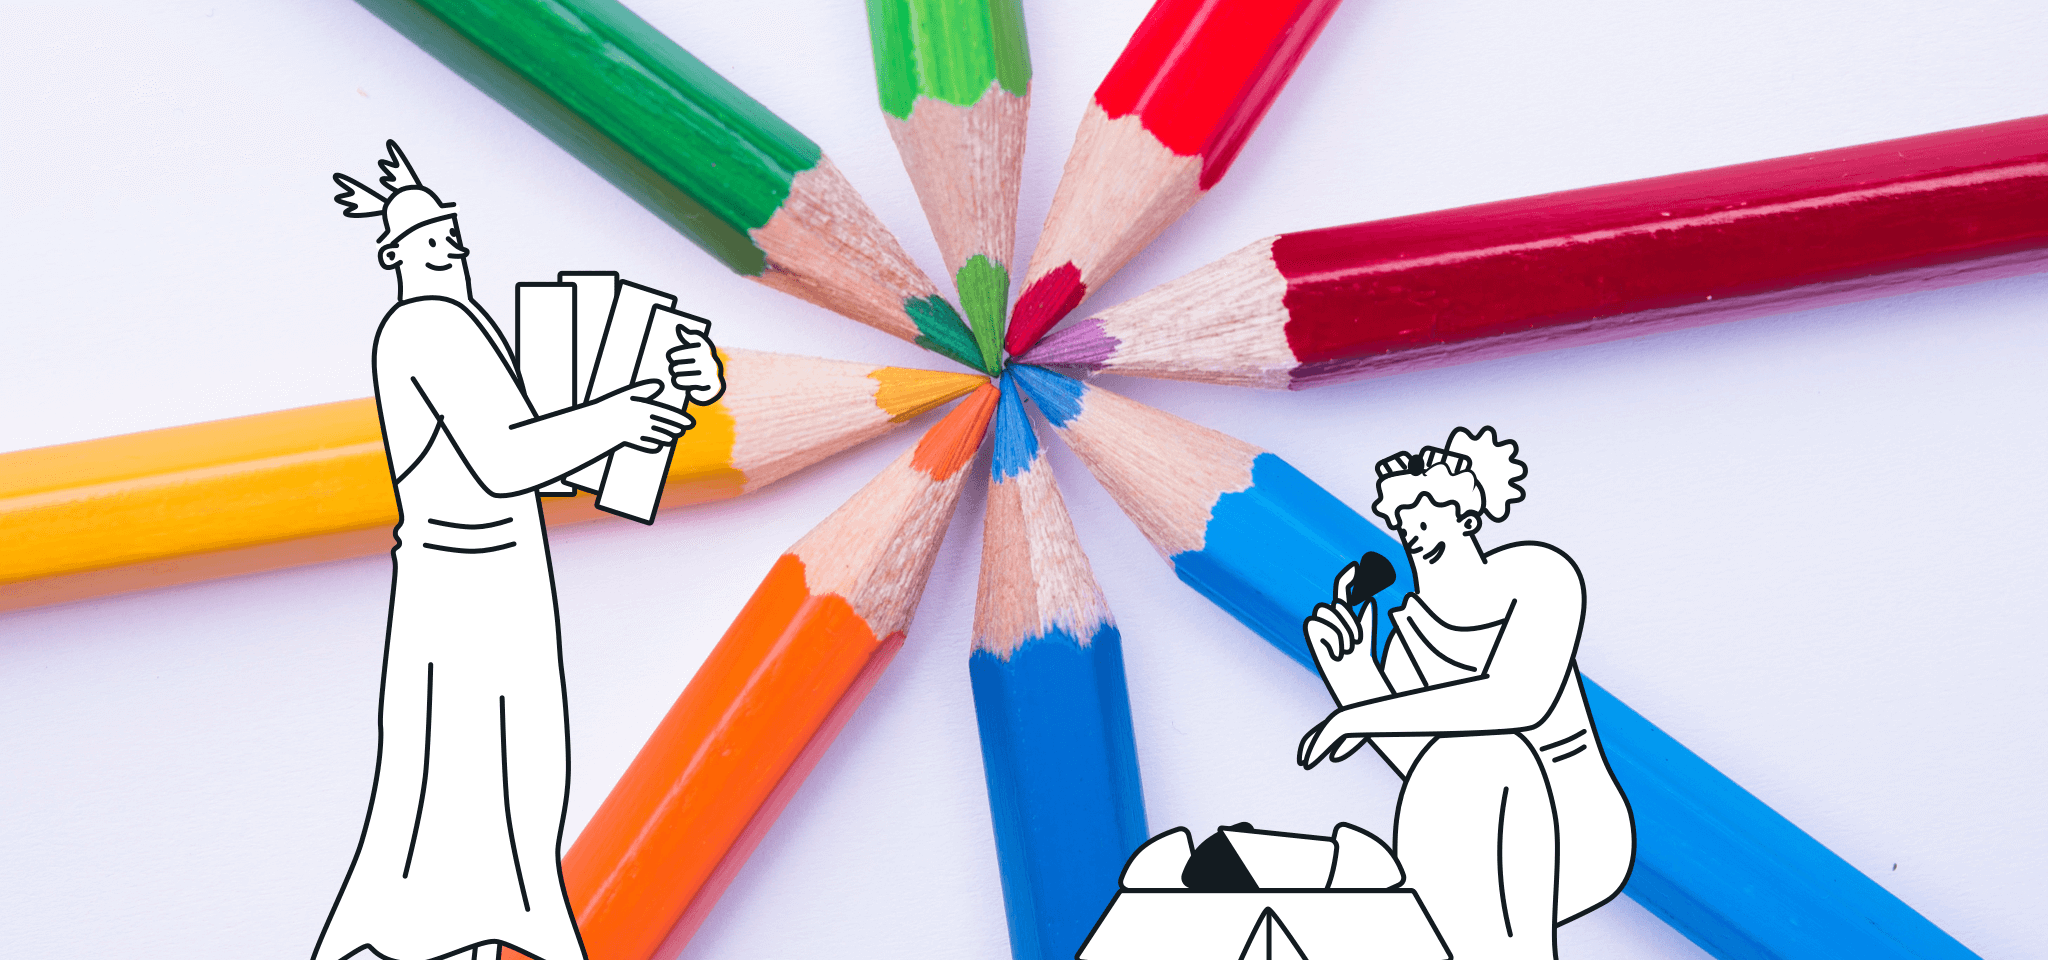 Hermès et Héra avec des crayons de couleur 